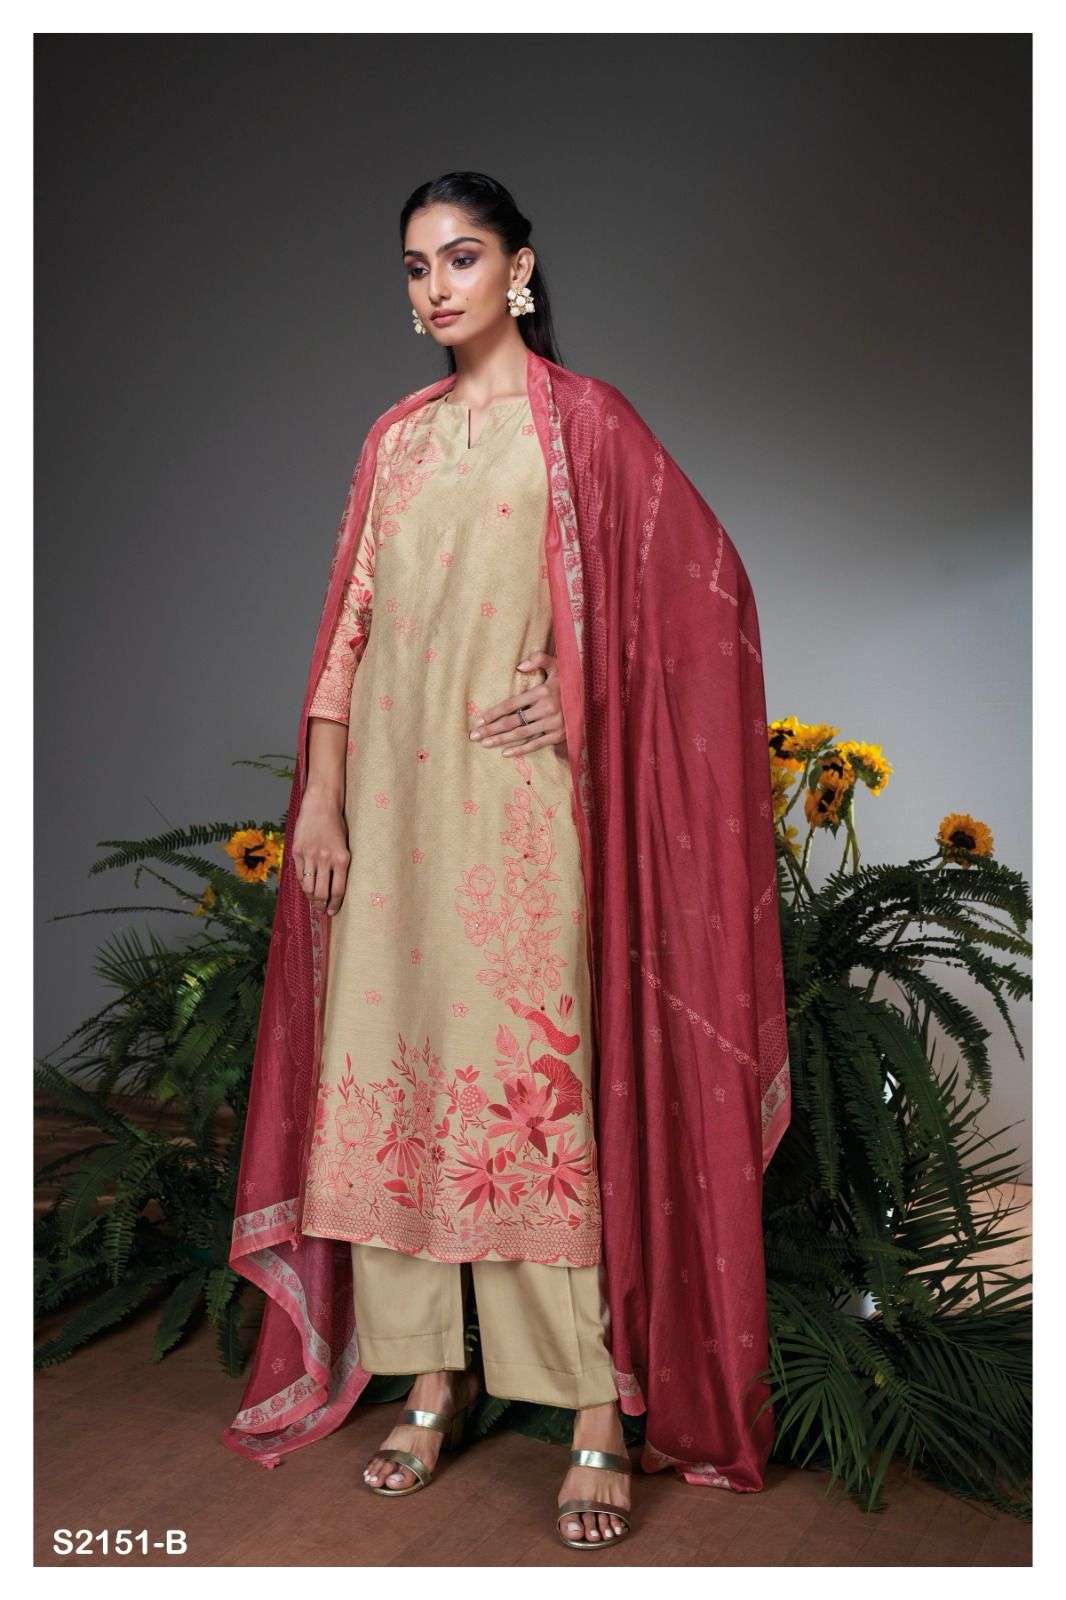 ganga aswara 2151 colour series designer  pakistani salwar kameez wholesaler surat gujarat